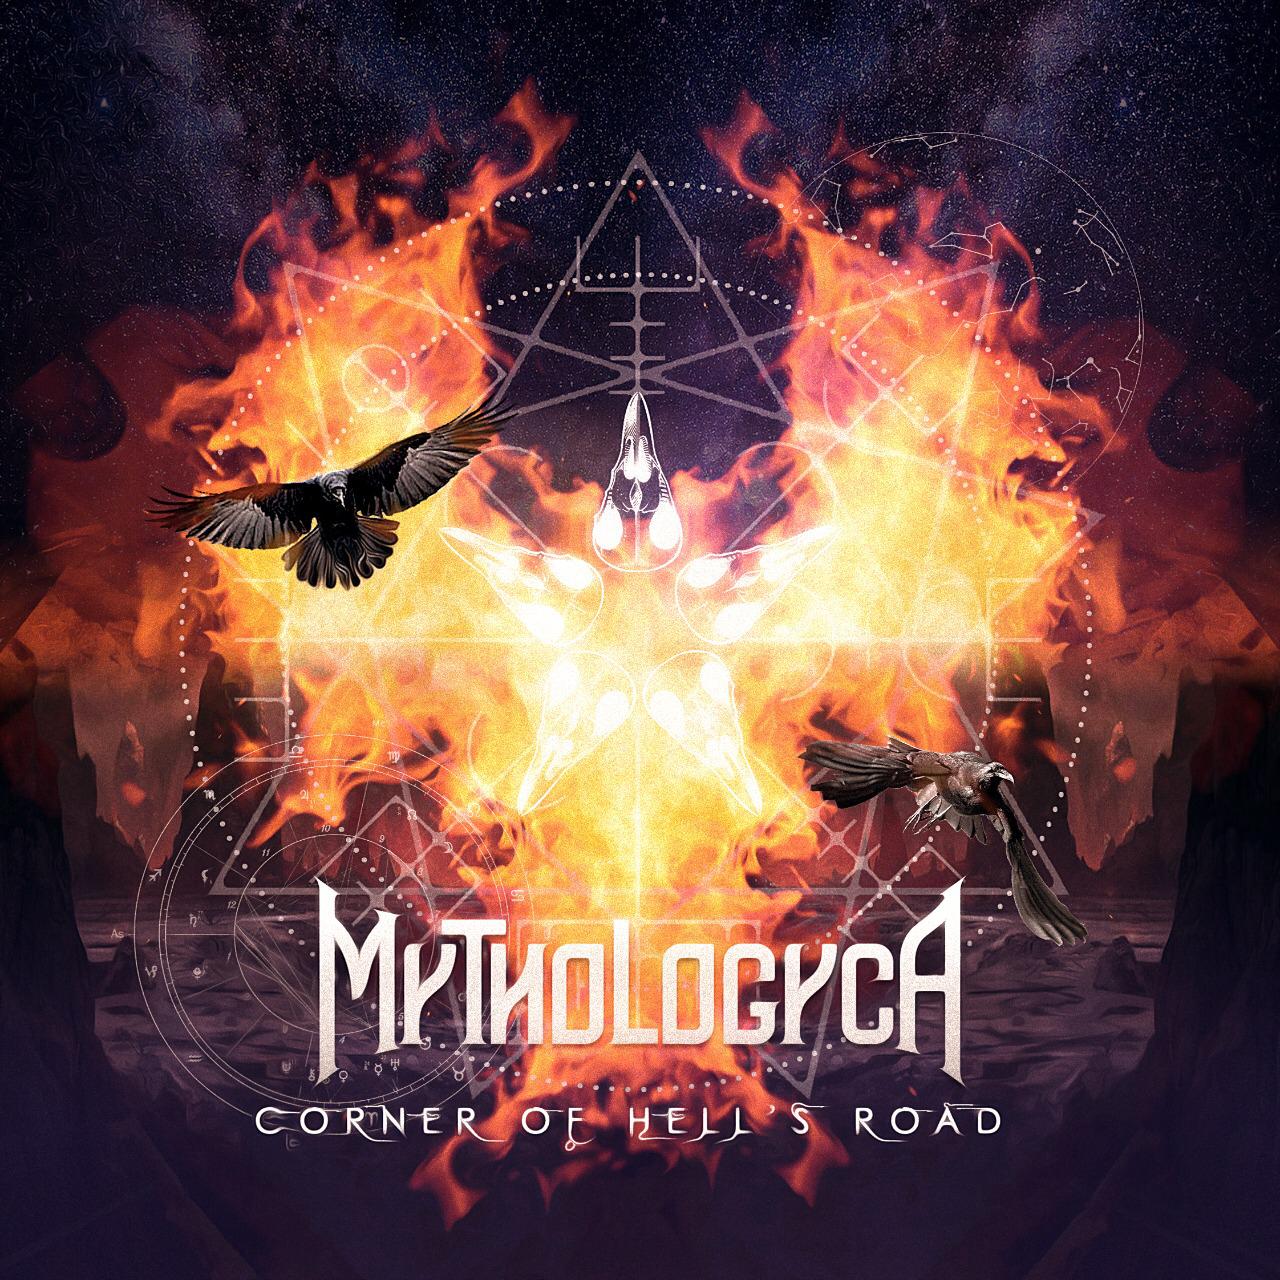 A Mythologyca acaba de lançar seu segundo álbum, CORNER OF HELL’S ROAD, pela gravadora MS METAL RECORDS.